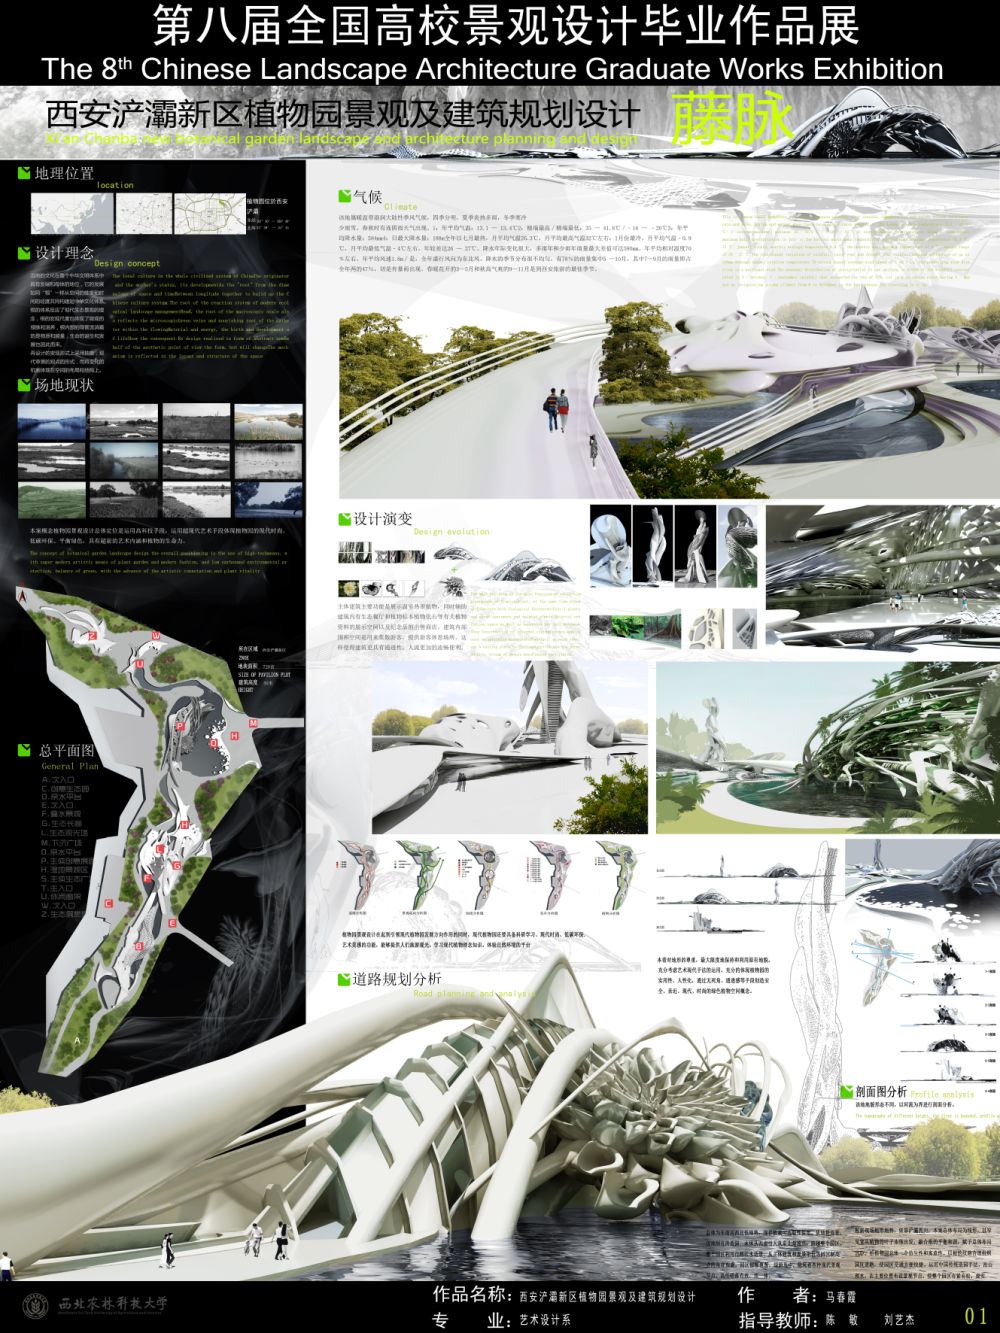 西安浐灞新区植物园景观及建筑规划设计-1